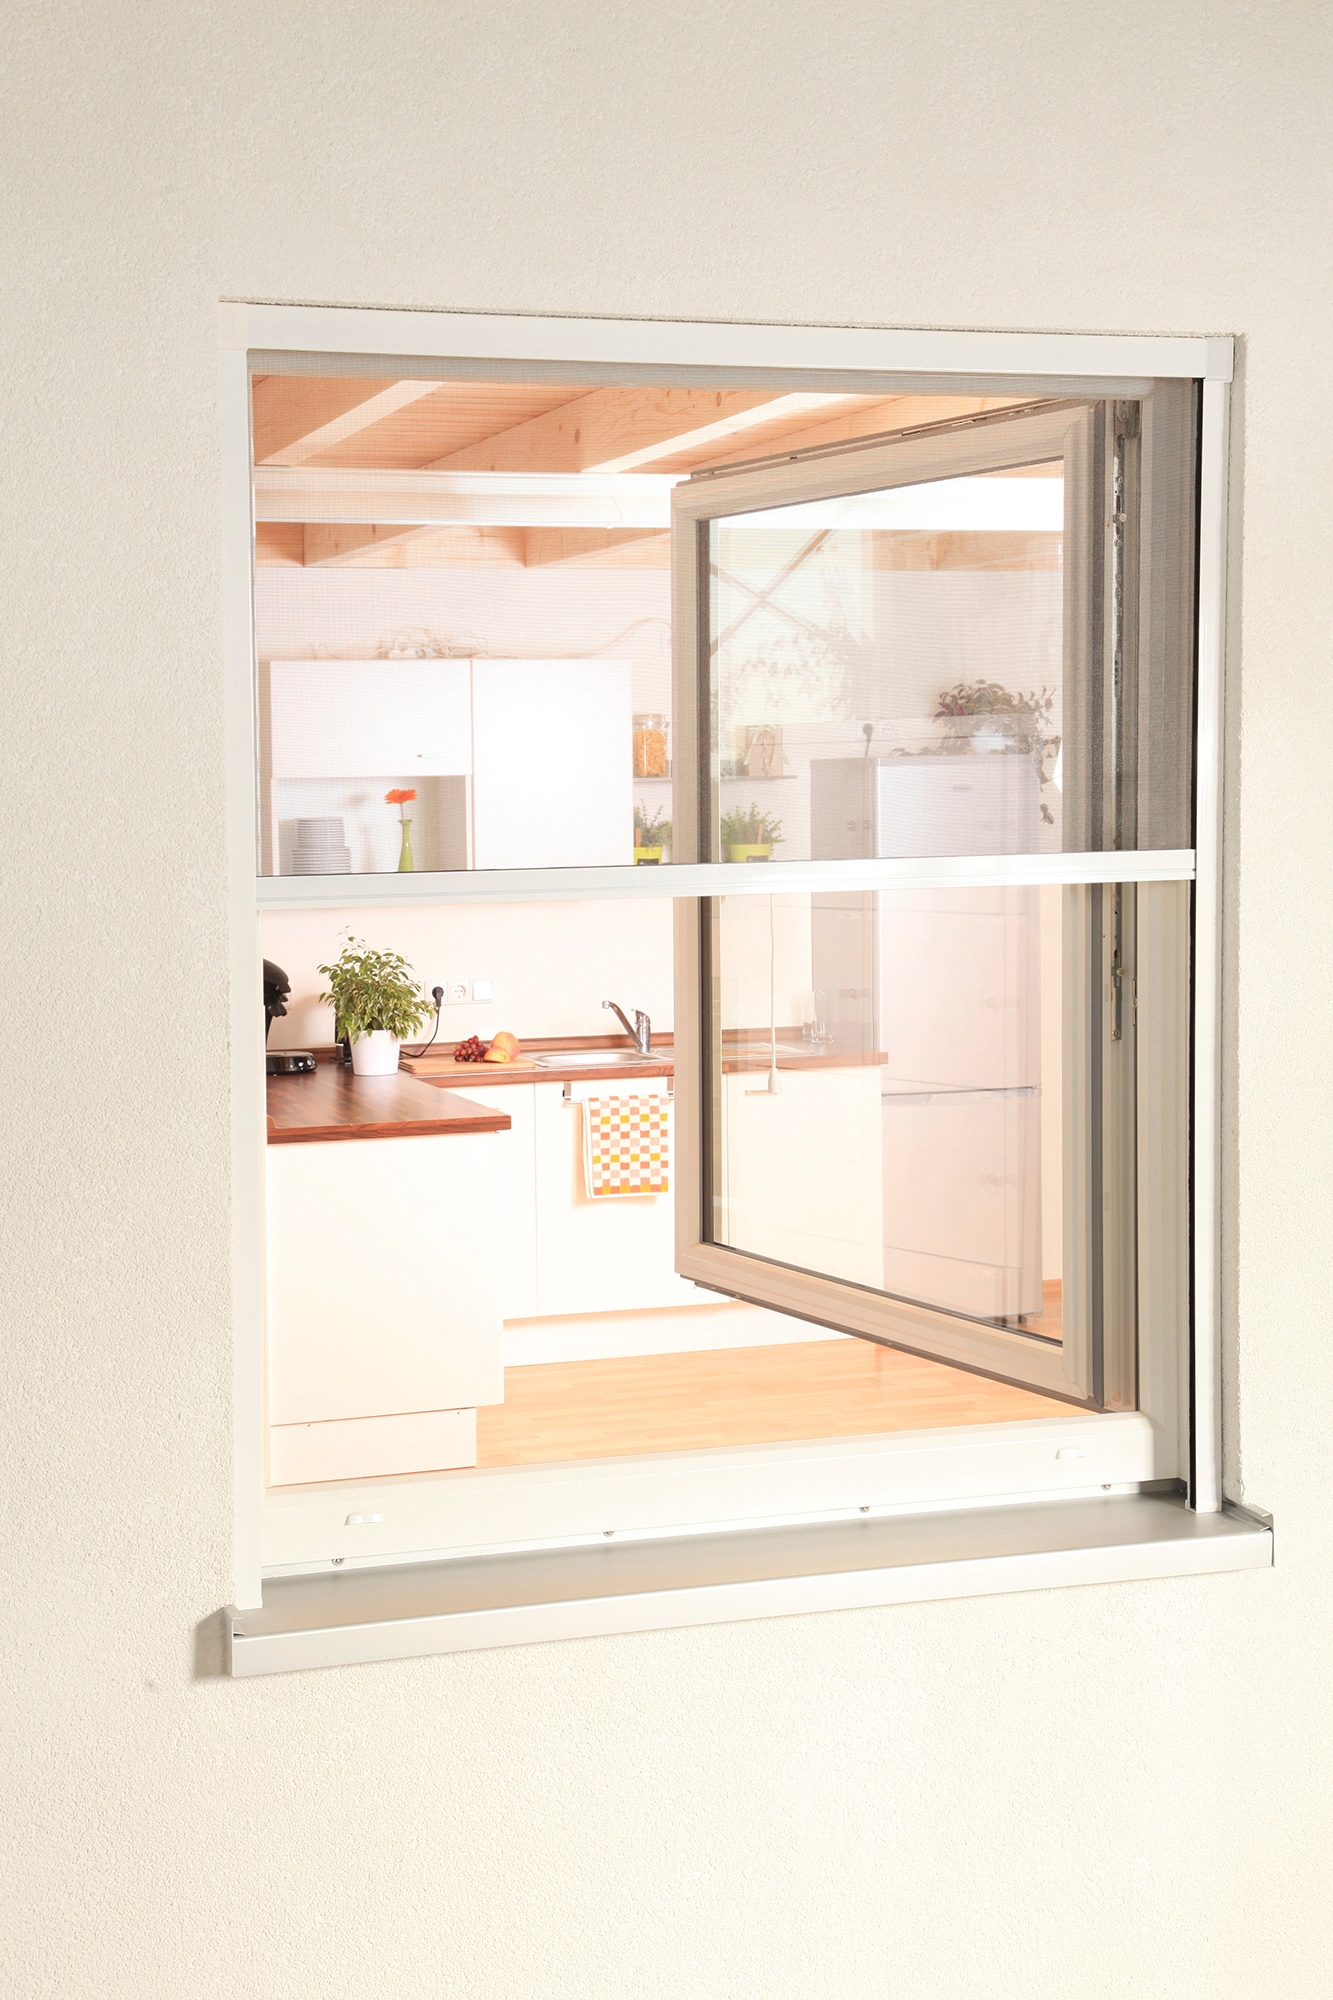 Insektenschutzrollo »SMART«, transparent, für Fenster, weiß/anthrazit, BxH: 160x160 cm